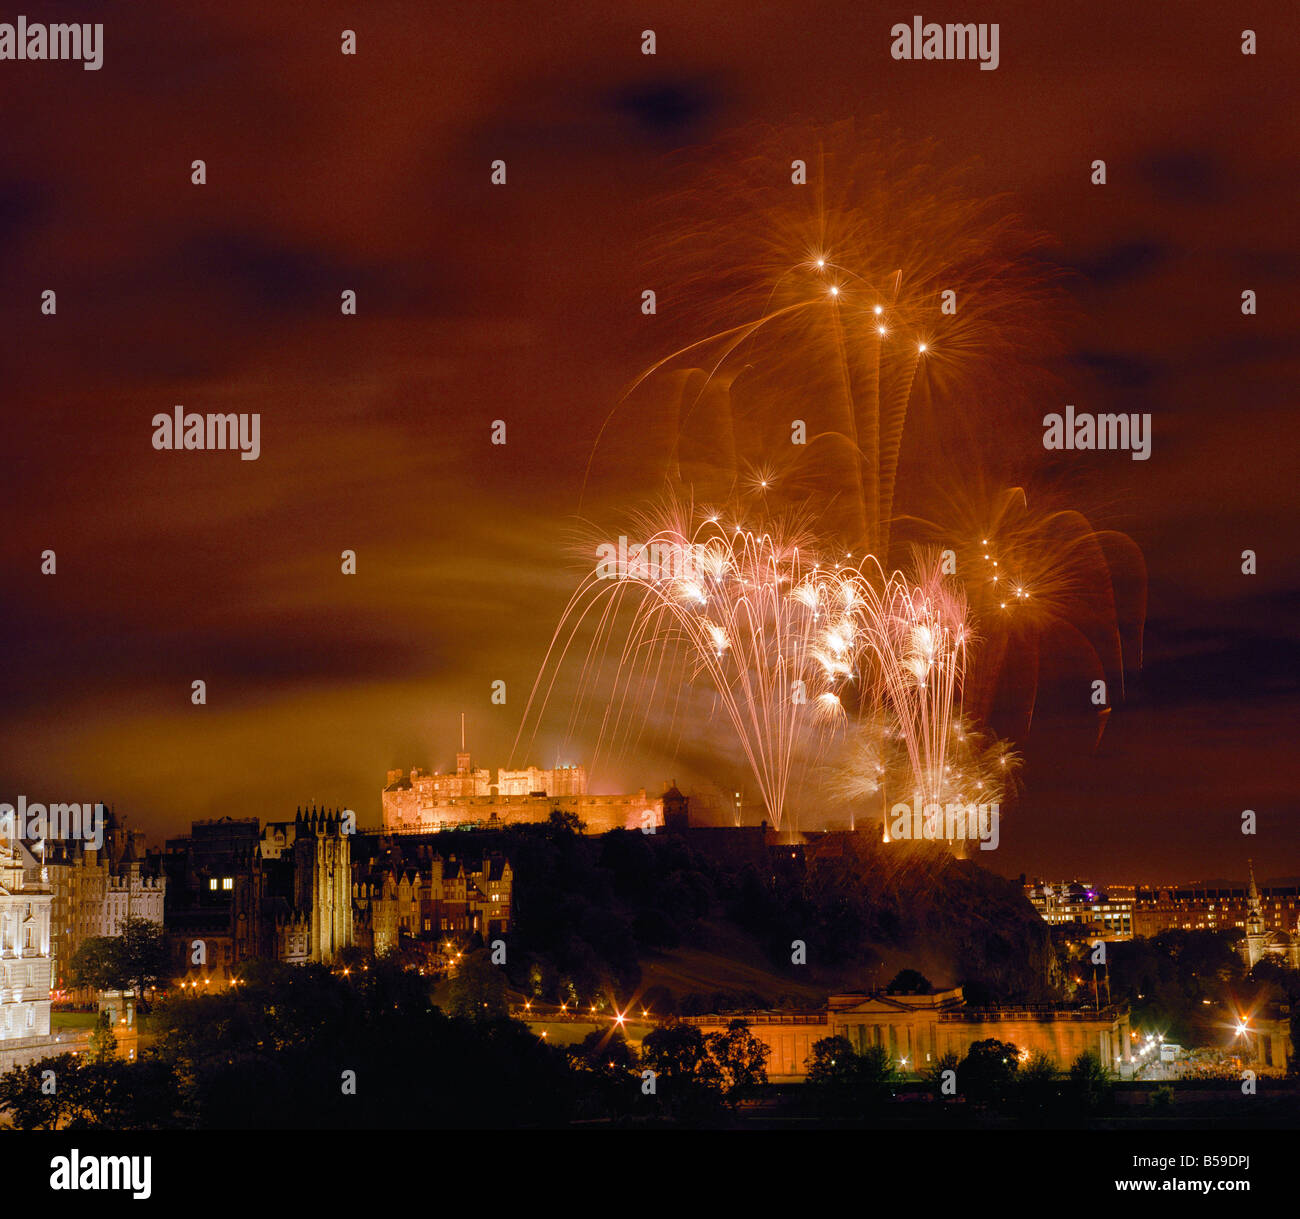 Los fuegos artificiales en el castillo de Edimburgo, Escocia, visto desde el hotel Balmoral Foto de stock